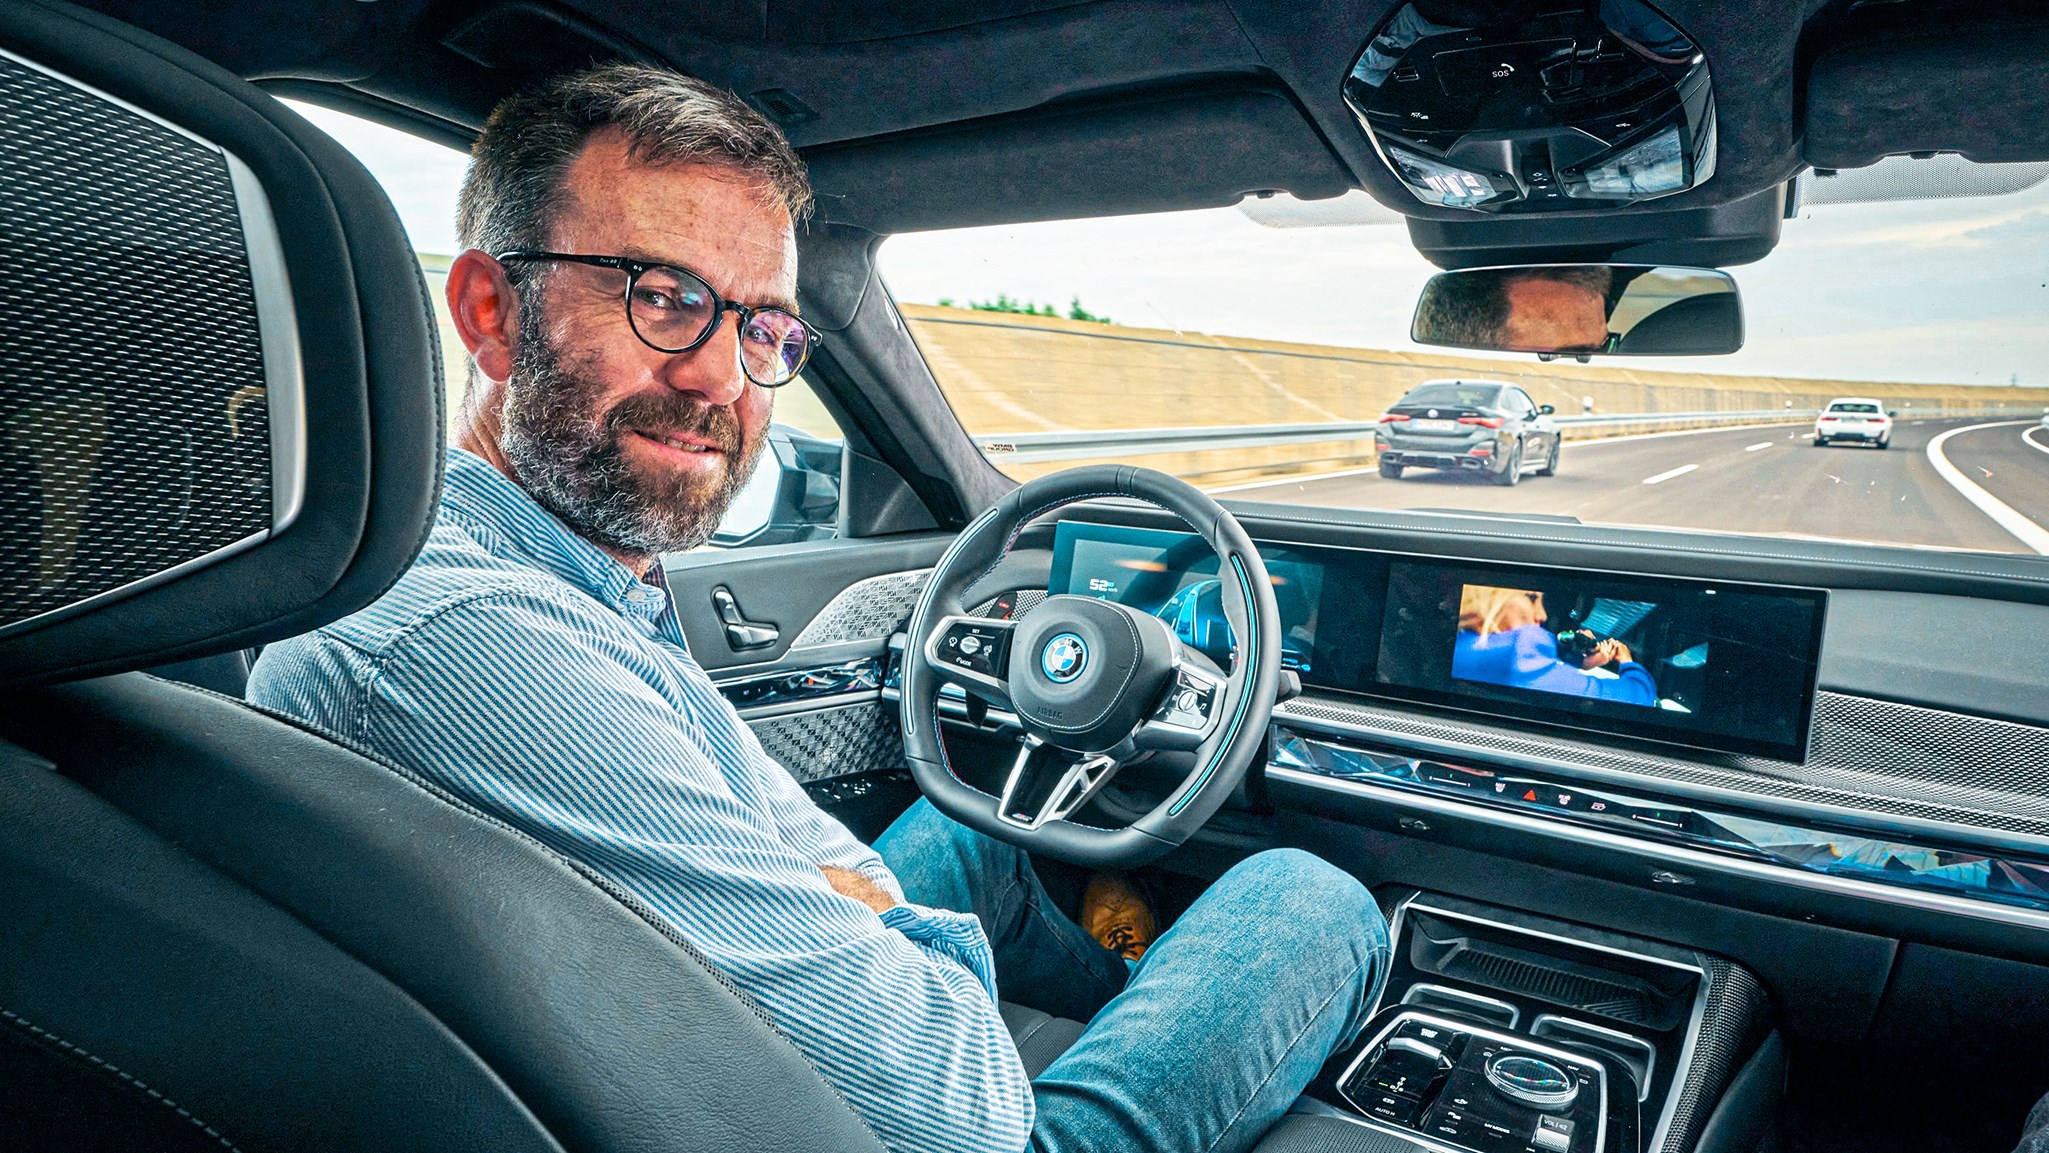 We try Personal Pilot - BMW's most advanced autonomous tech